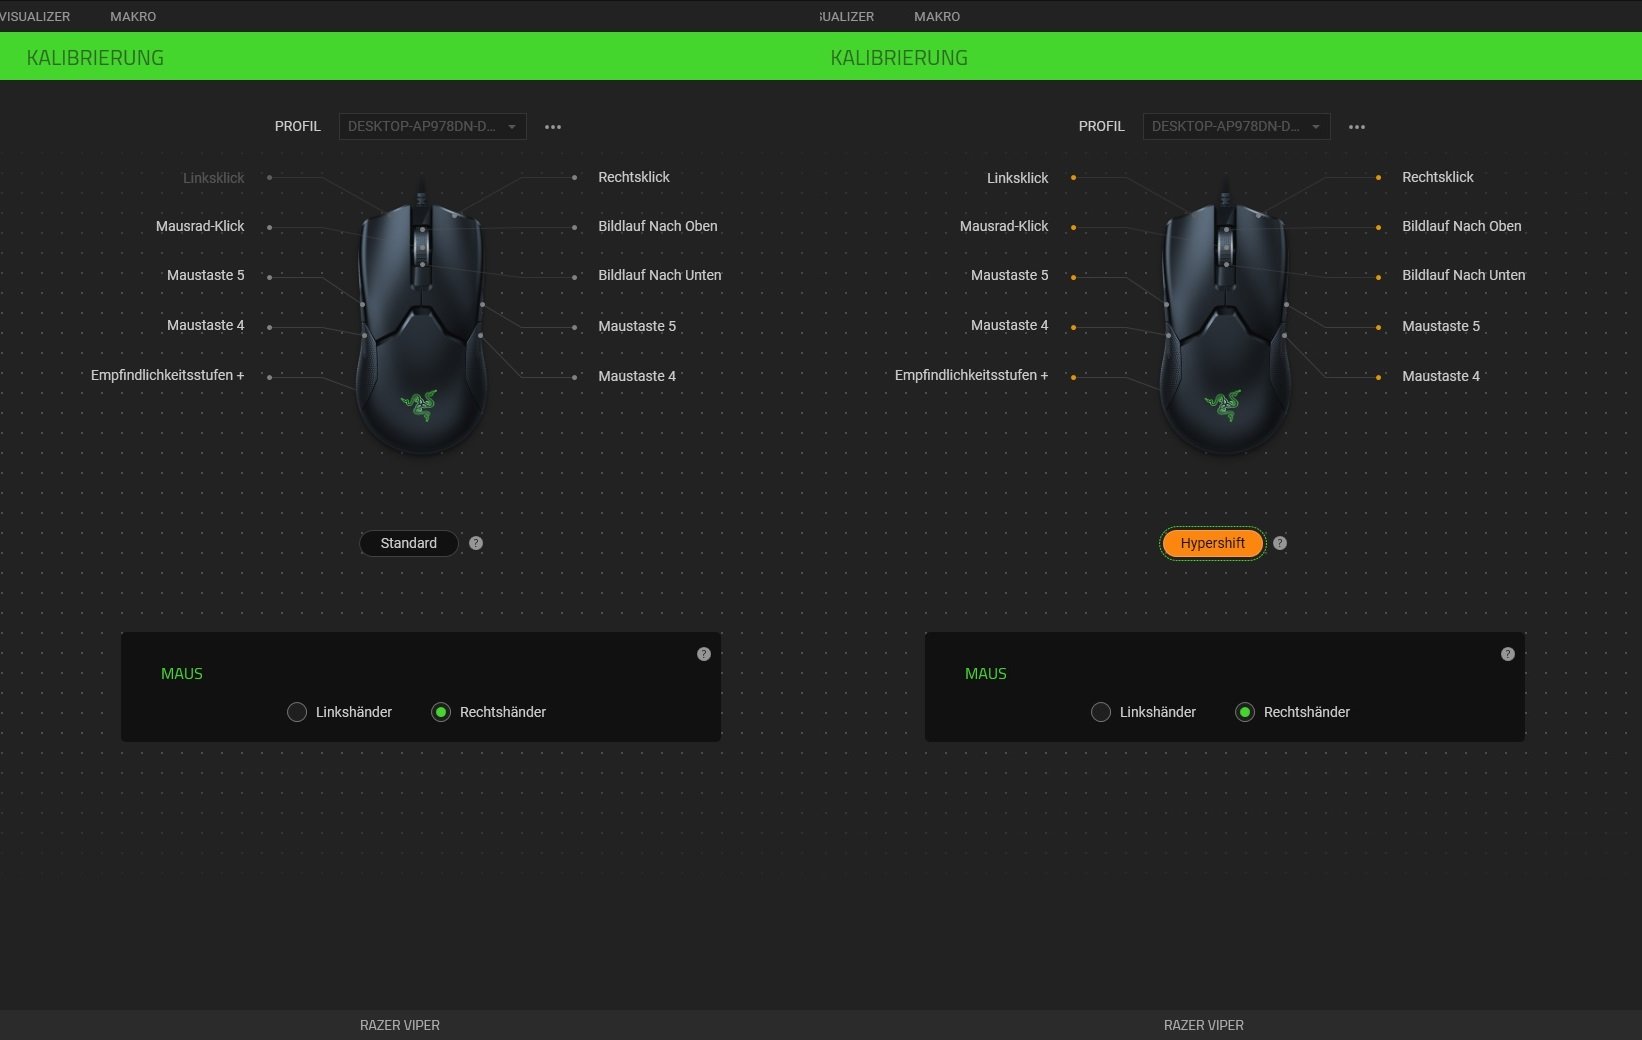 Gaming-Maus: Schaubild der verschiedenen Tasten über welche eine gute Maus verfügt.